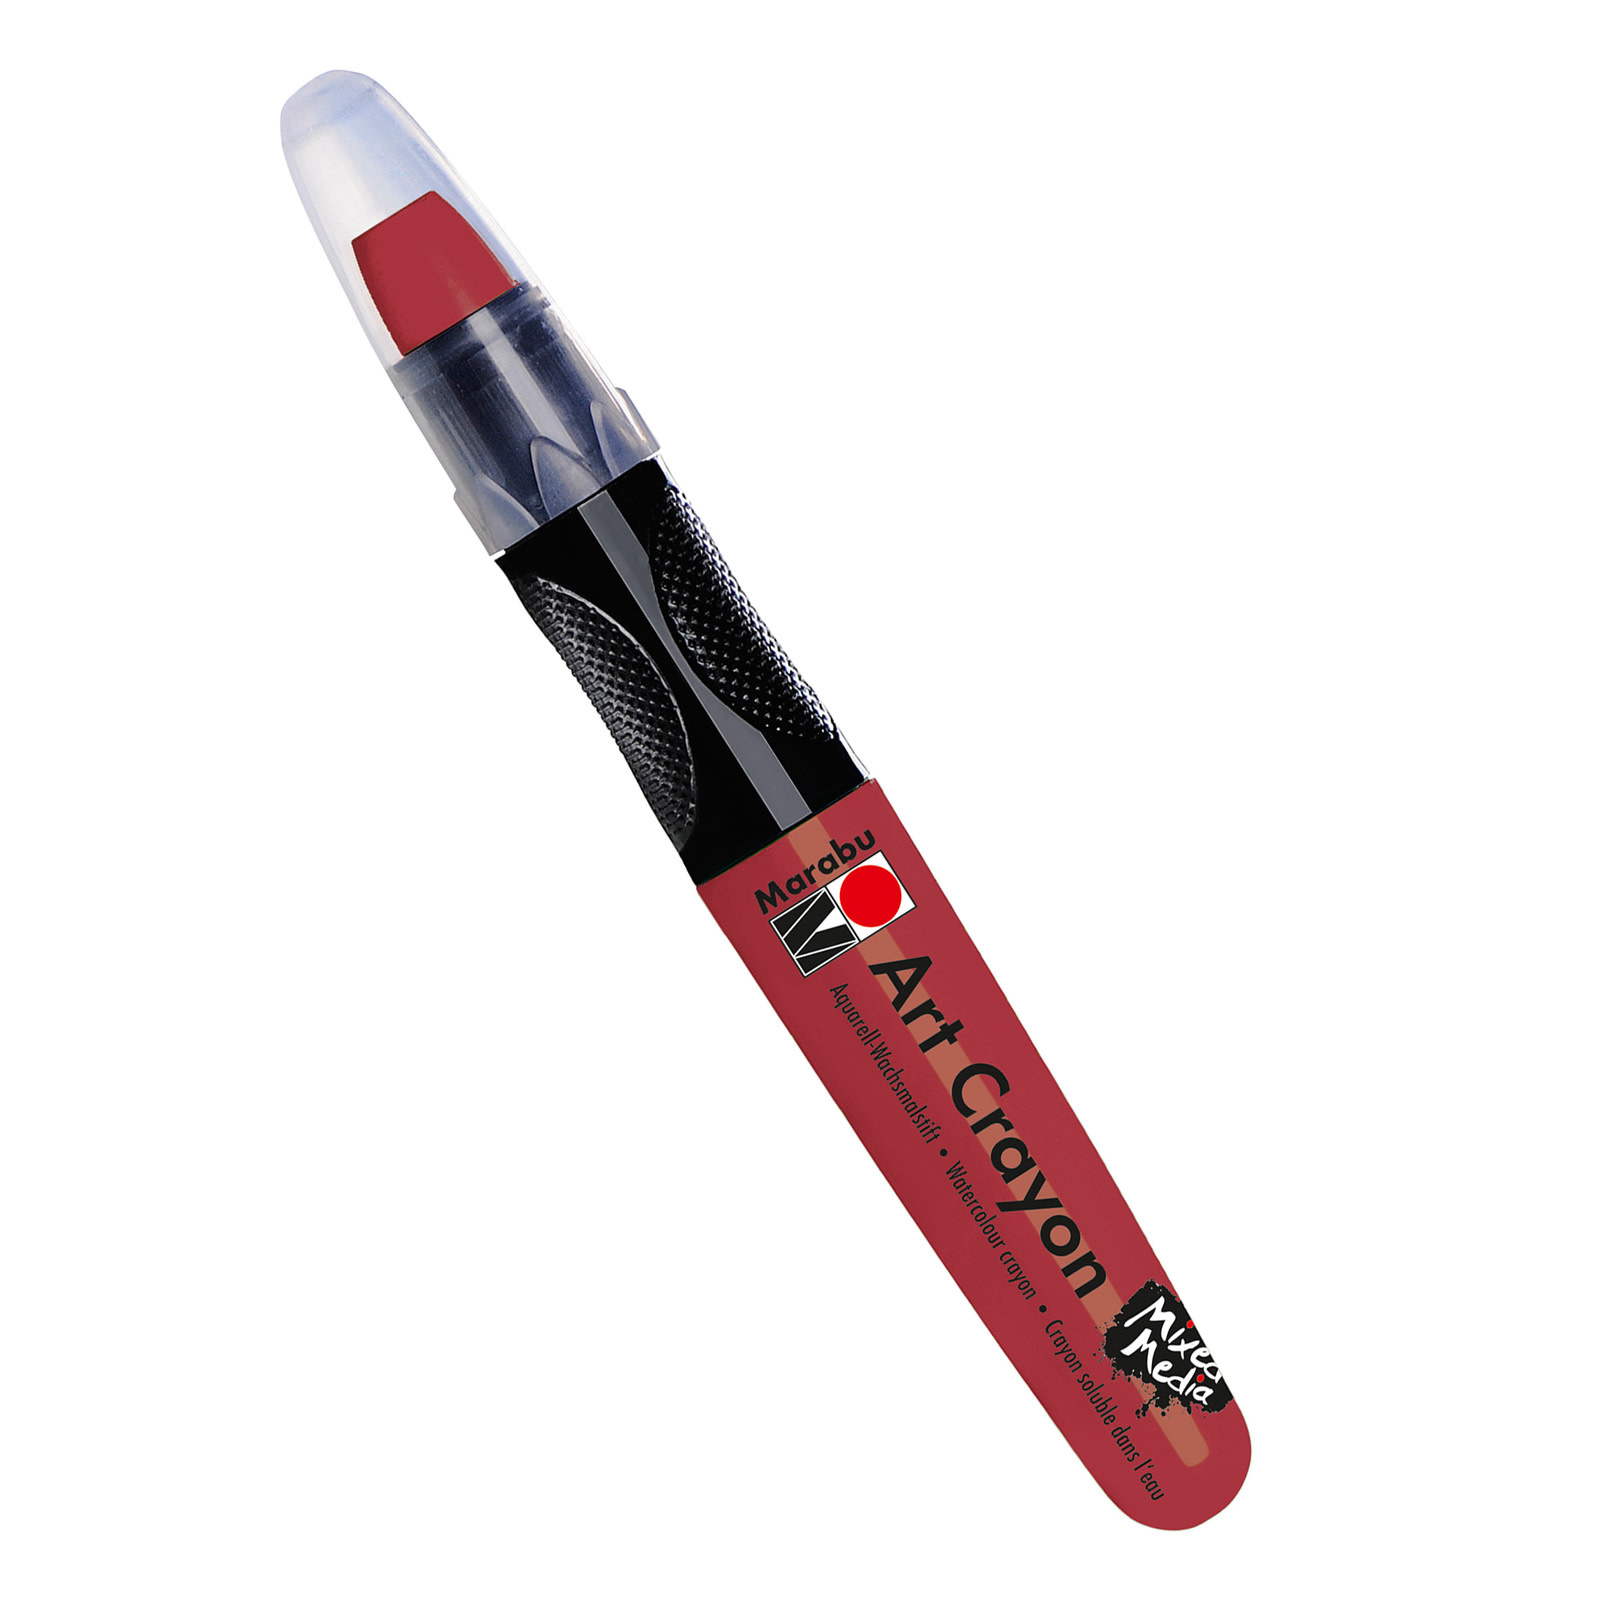 Marabu Art Crayons, Pomegranate - Water Soluble Wax